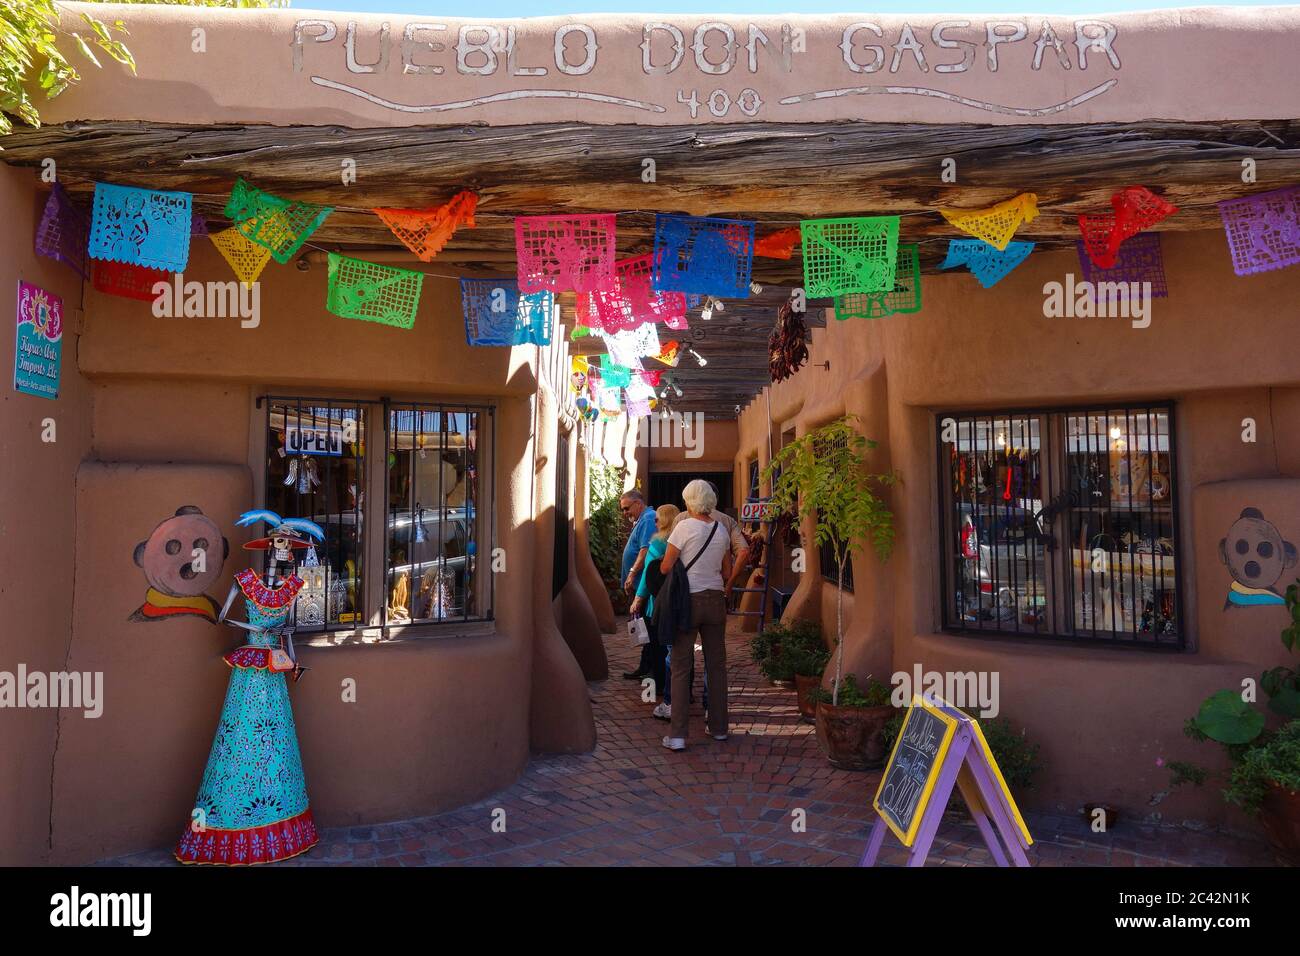 Pueblo don Gaspar in Albuquerque, NM Stock Photo